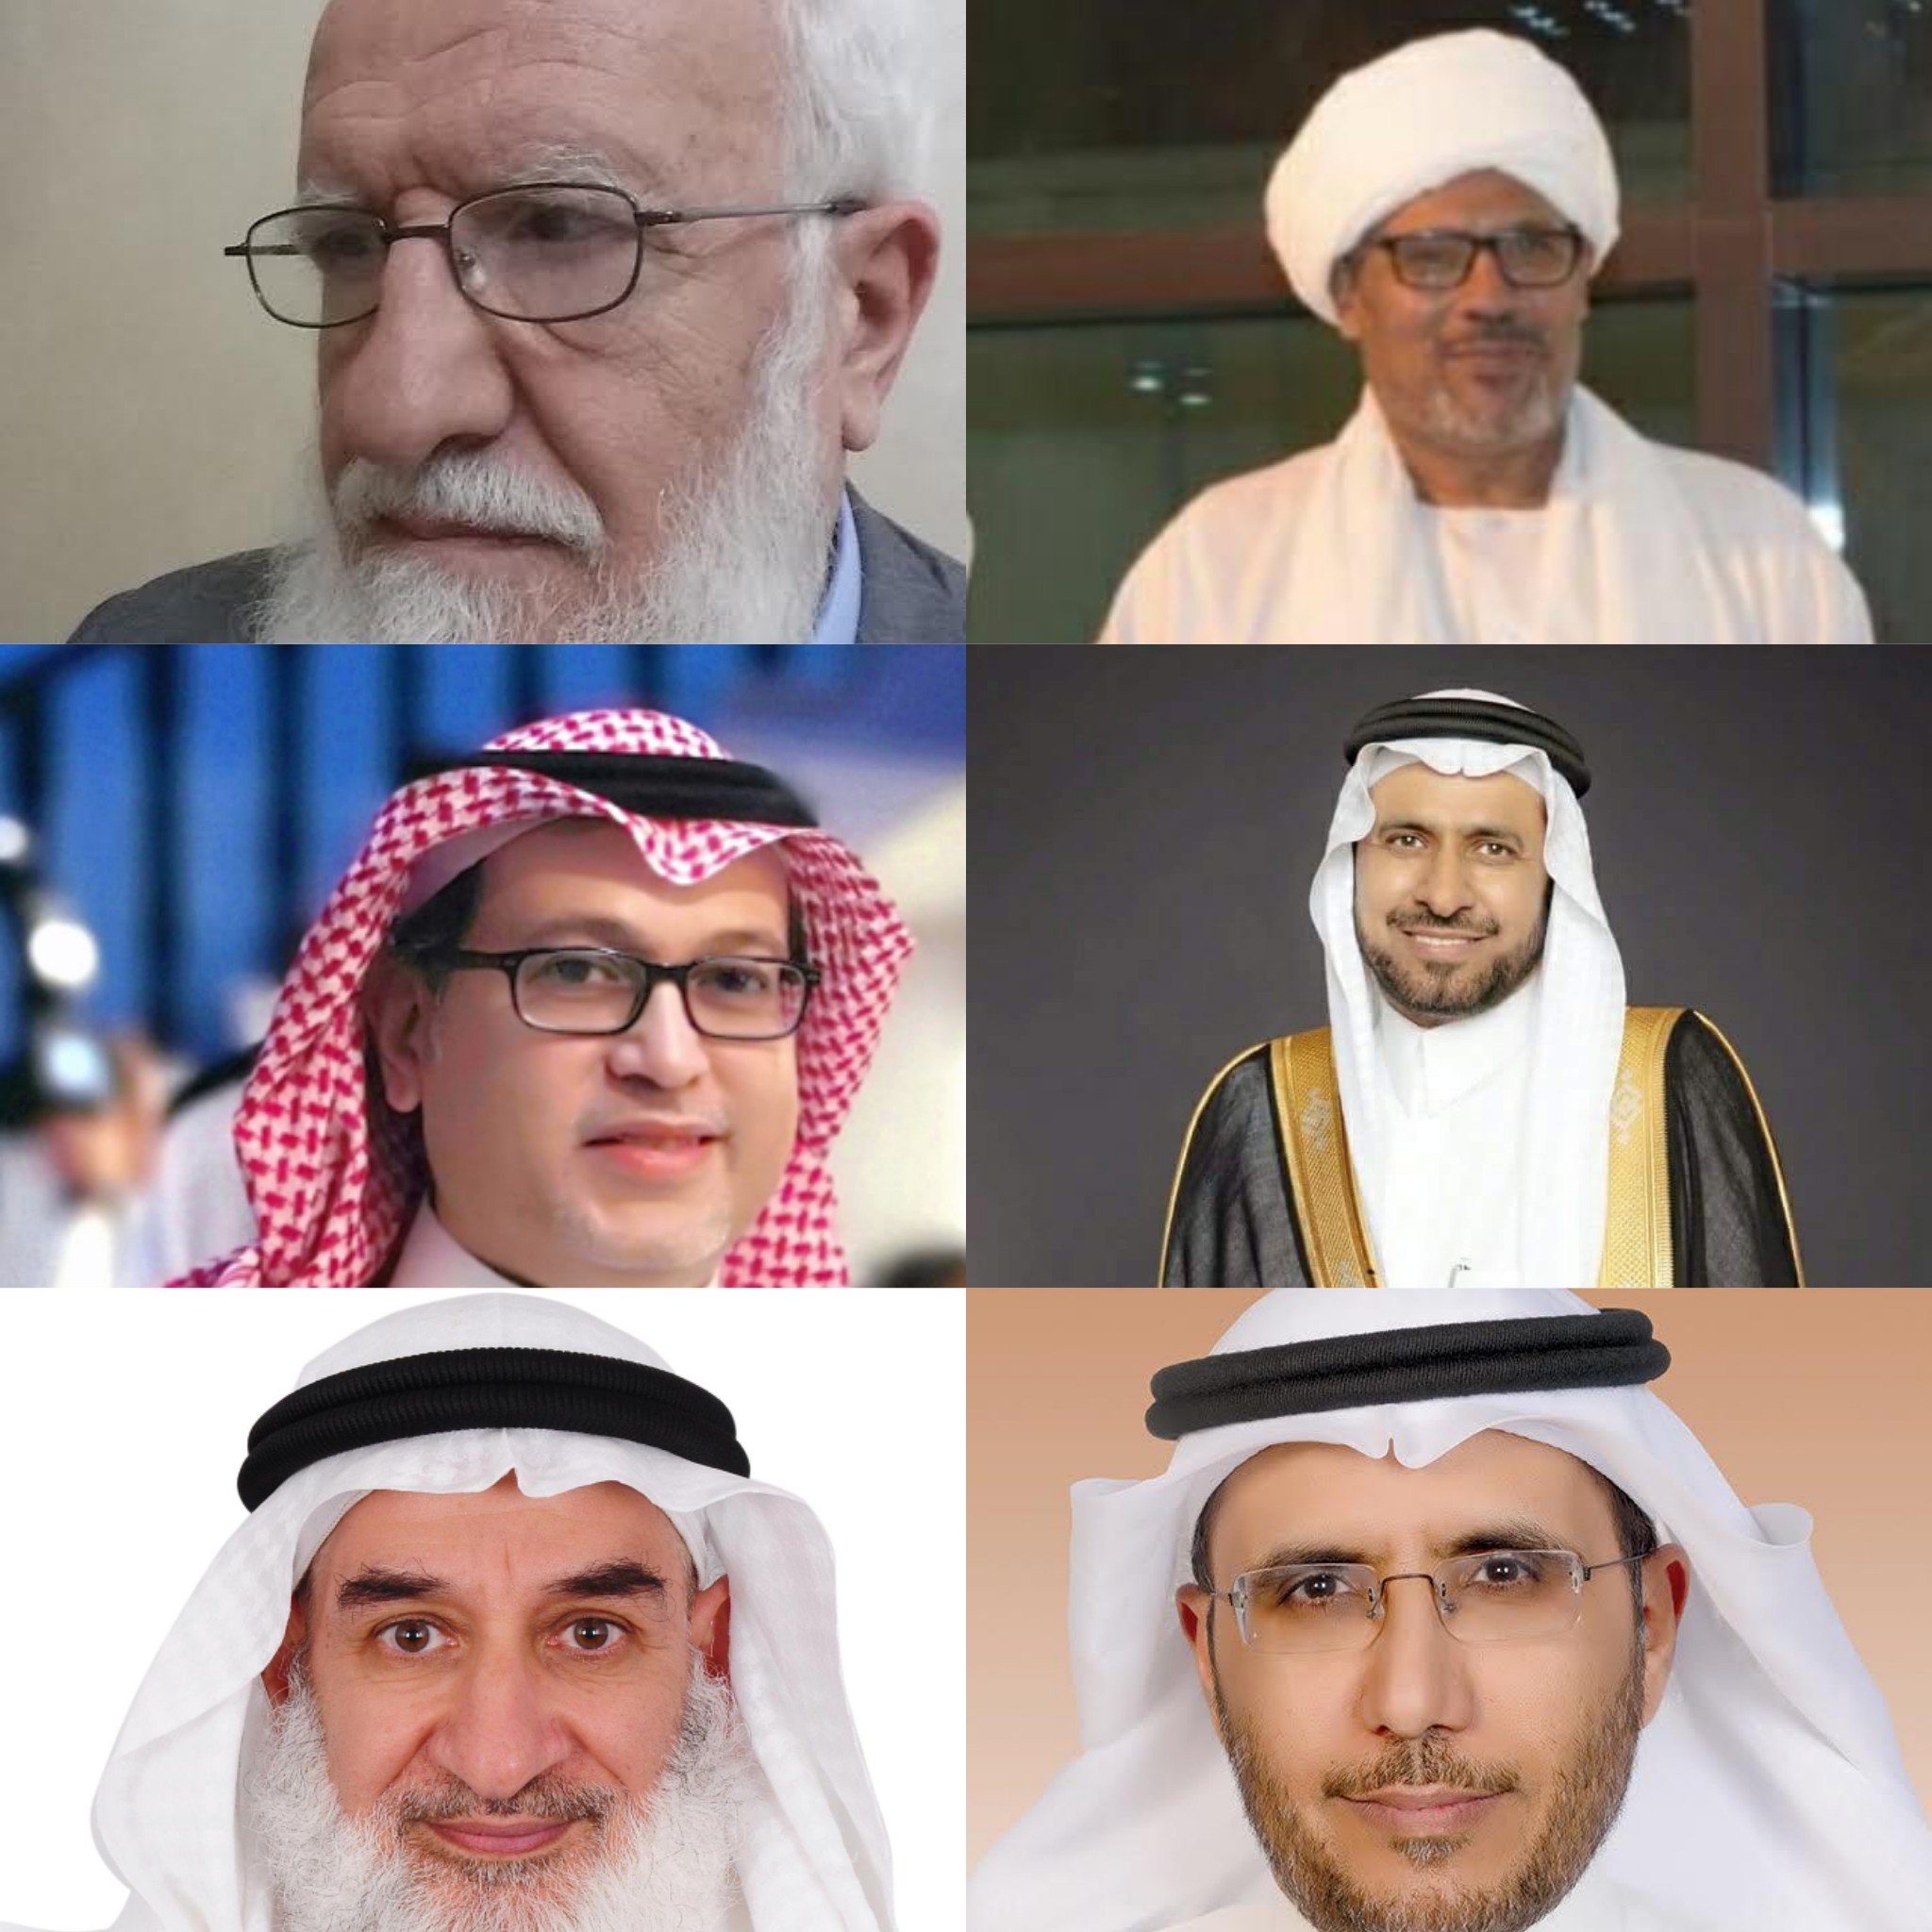 الجمعية السعودية للهندسة المدنية تُنظم مبادرة “الهندسة بلسان عربي”